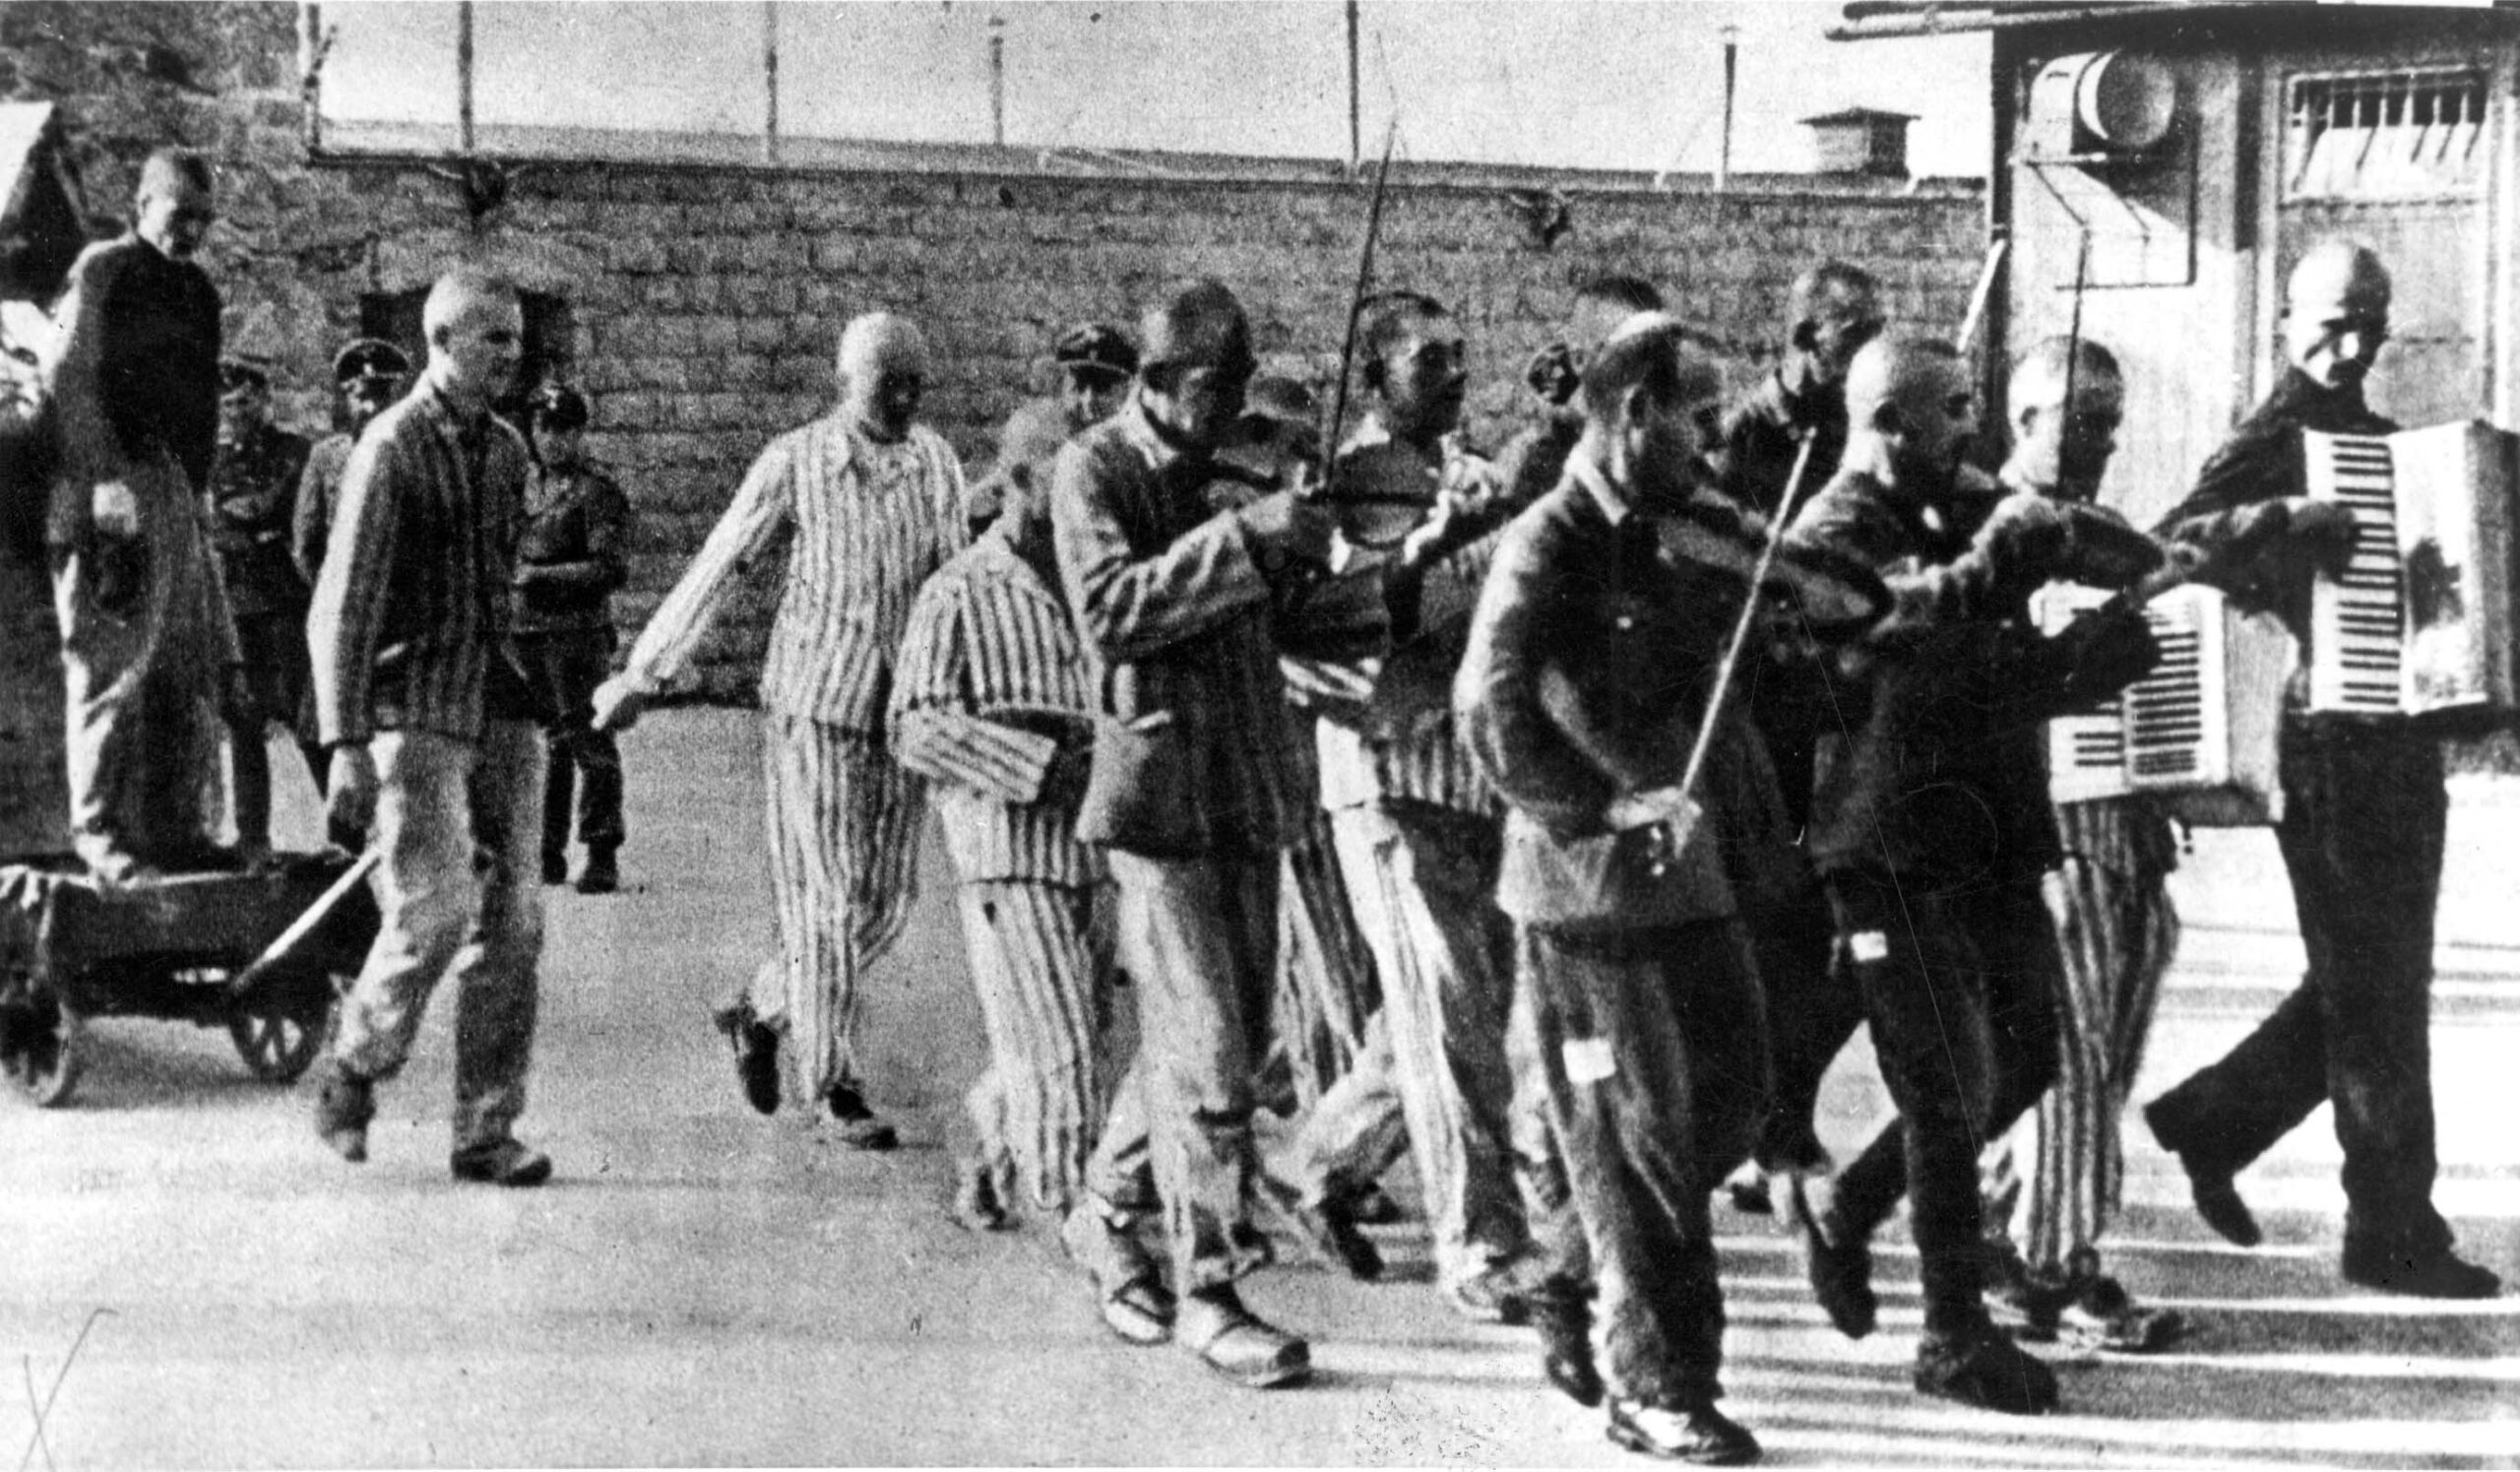 Clase social y supervivencia: lo que nos enseñan los prisioneros españoles de Mauthausen